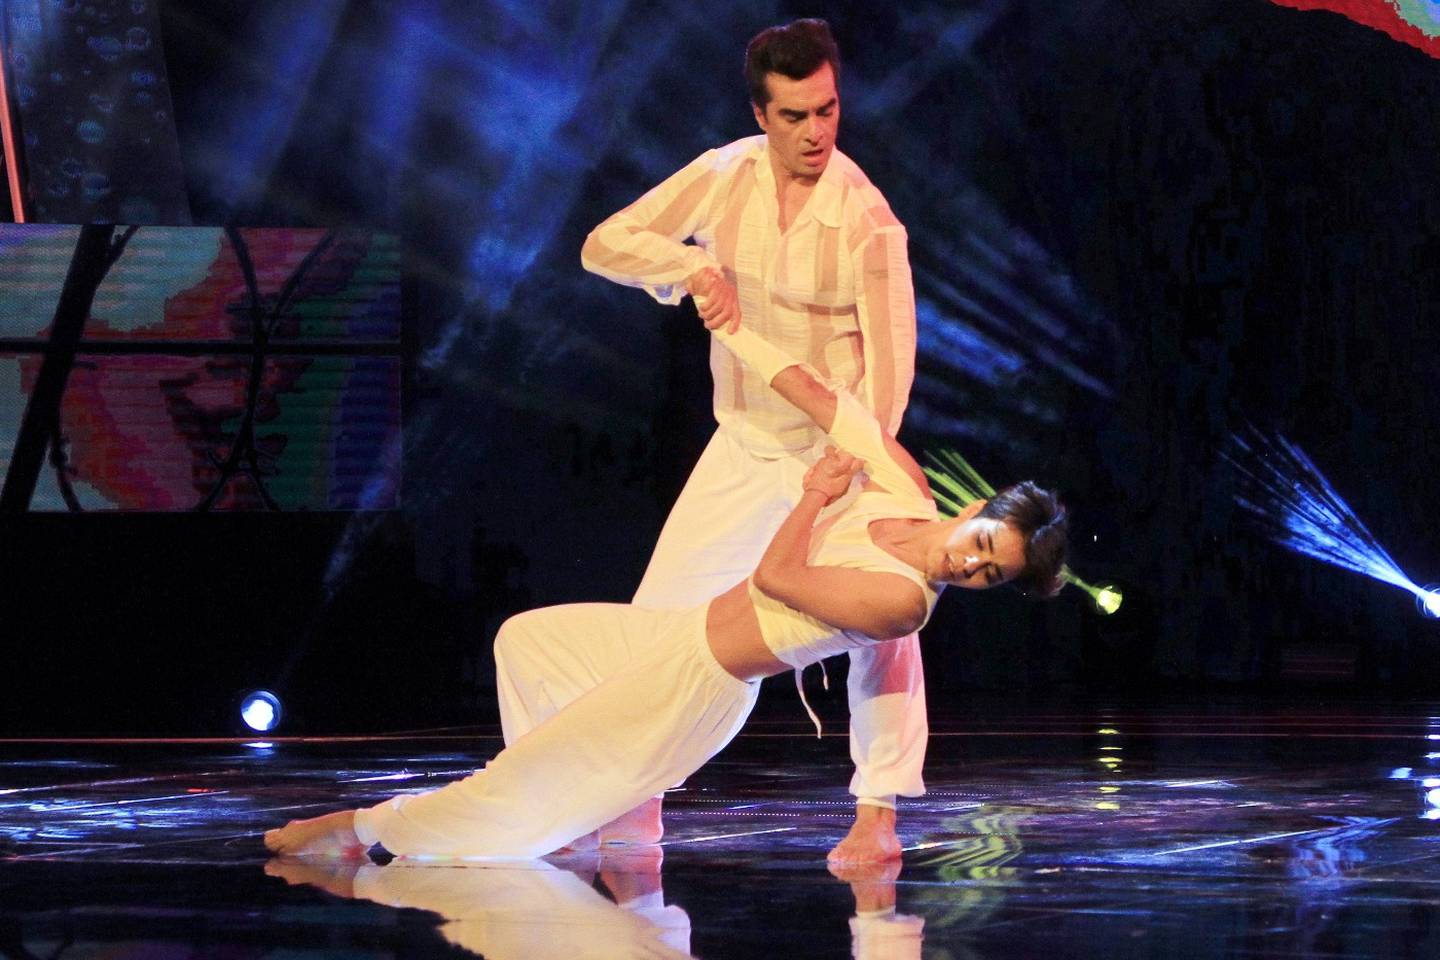 El bailarín es uno de los favoritos para llegar a la final de "Aquí se baila".